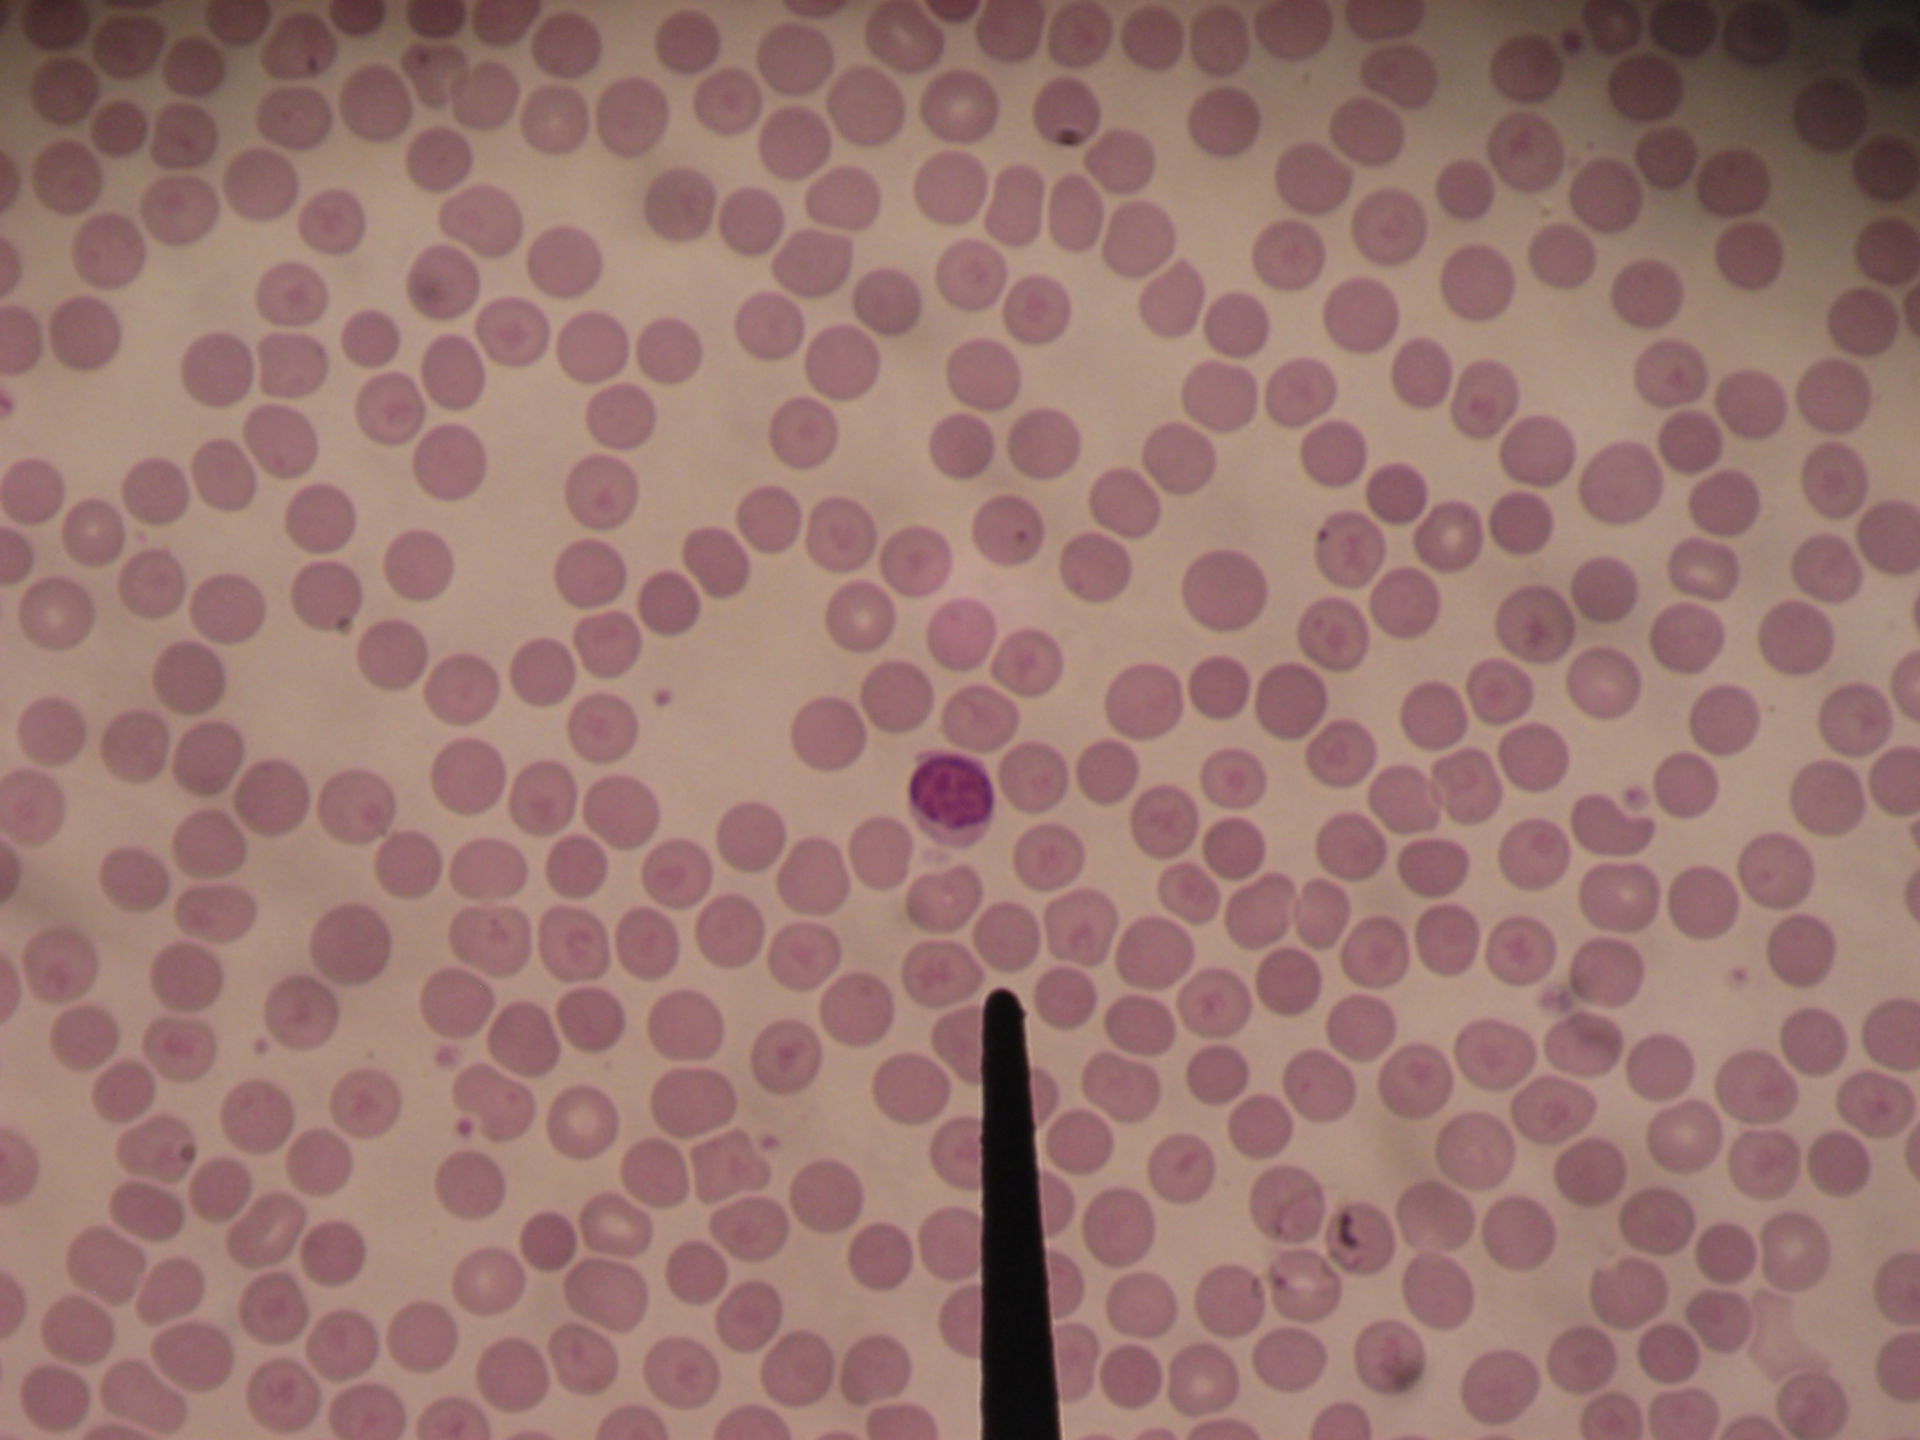 Bovine blood smear 3 - lymphocyte